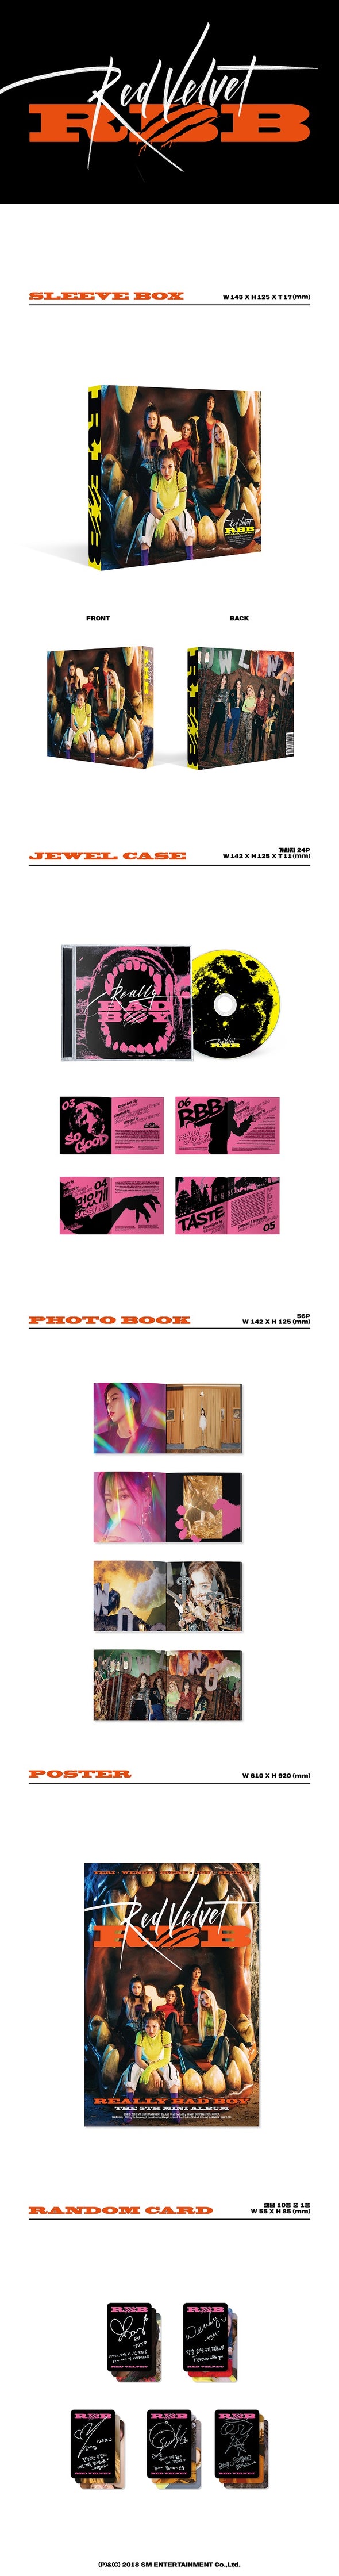 RED VELVET - Mini Album Vol.5 - RBB - Kpop Music 사랑해요